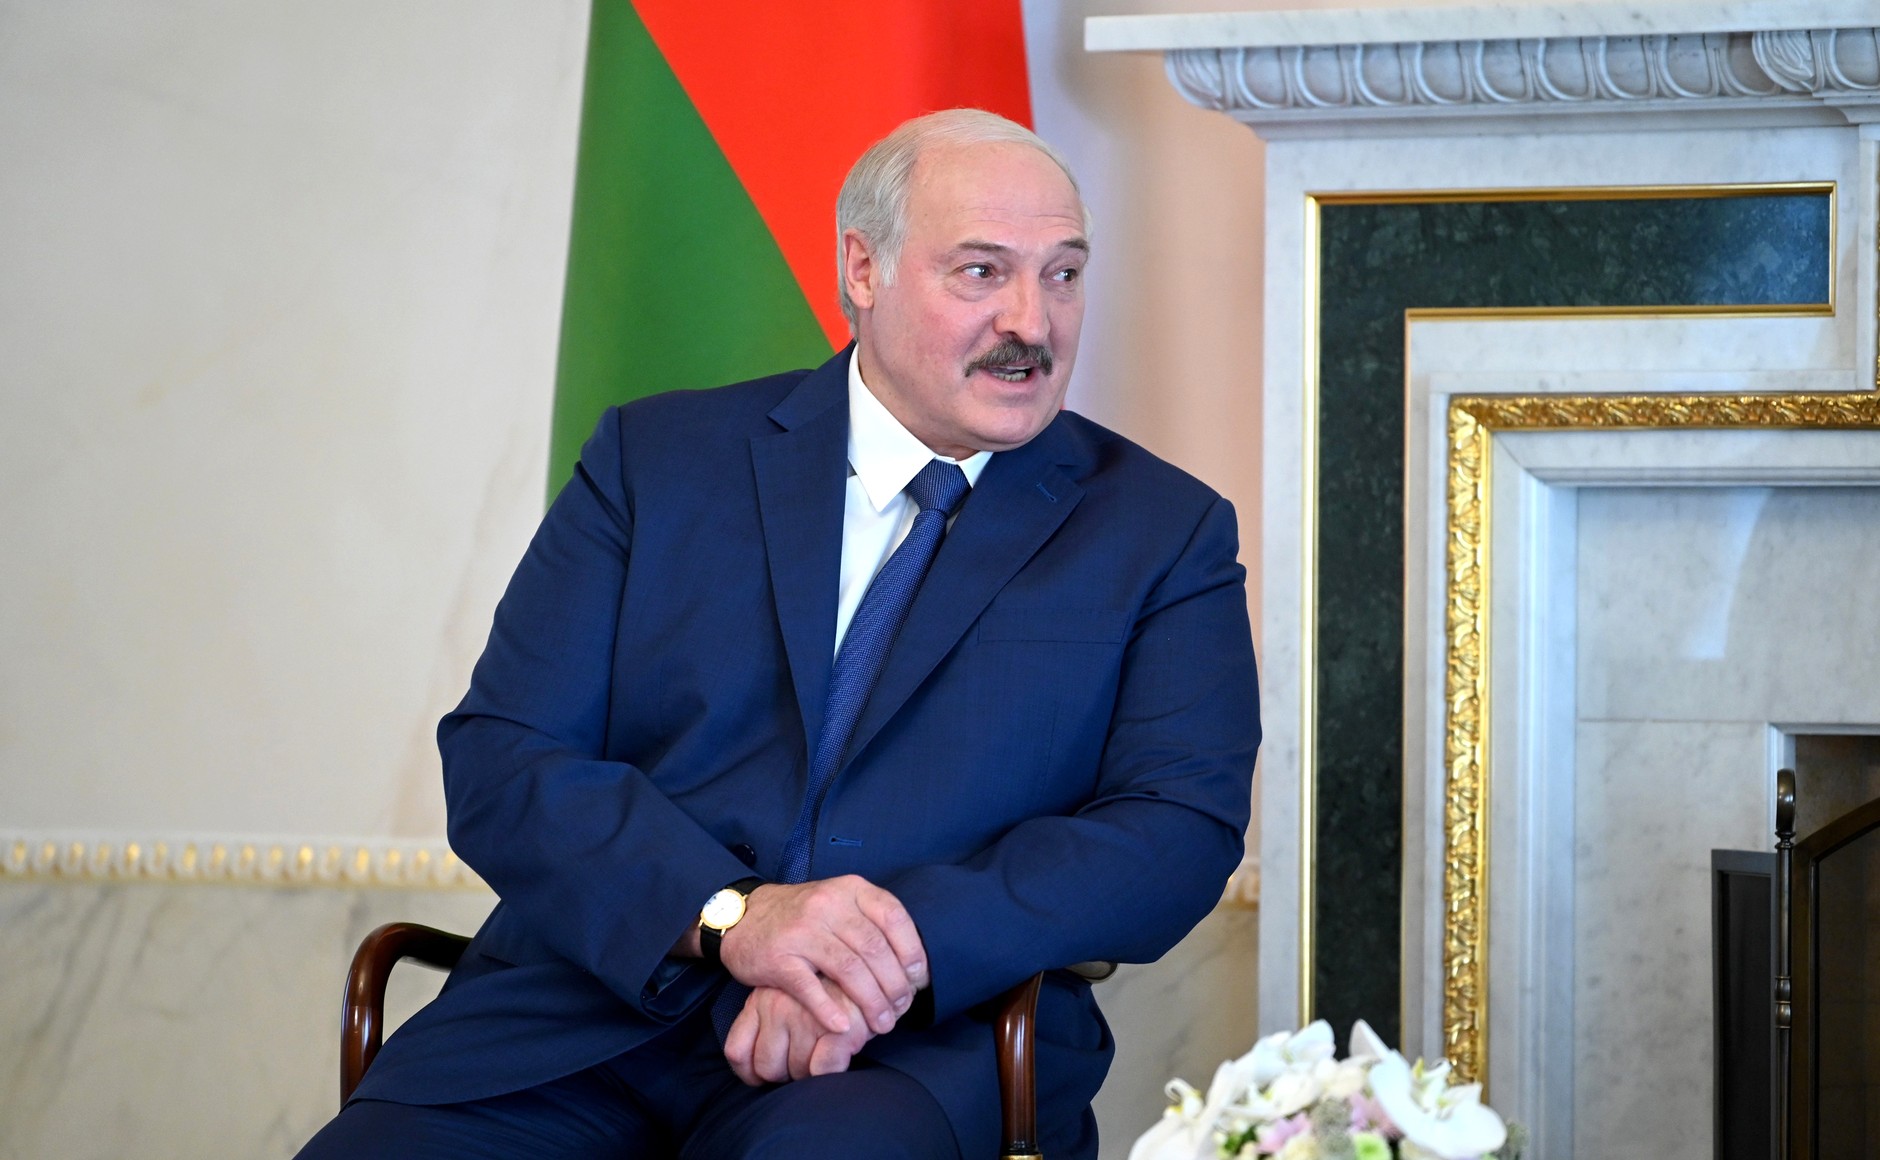 Bild: Kremlin.ru, Meeting of Vladimir Putin and Alexander Lukashenko 02, CC BY 4.0, via Wikimedia Commons, (keine Änderungen vorgenommen)